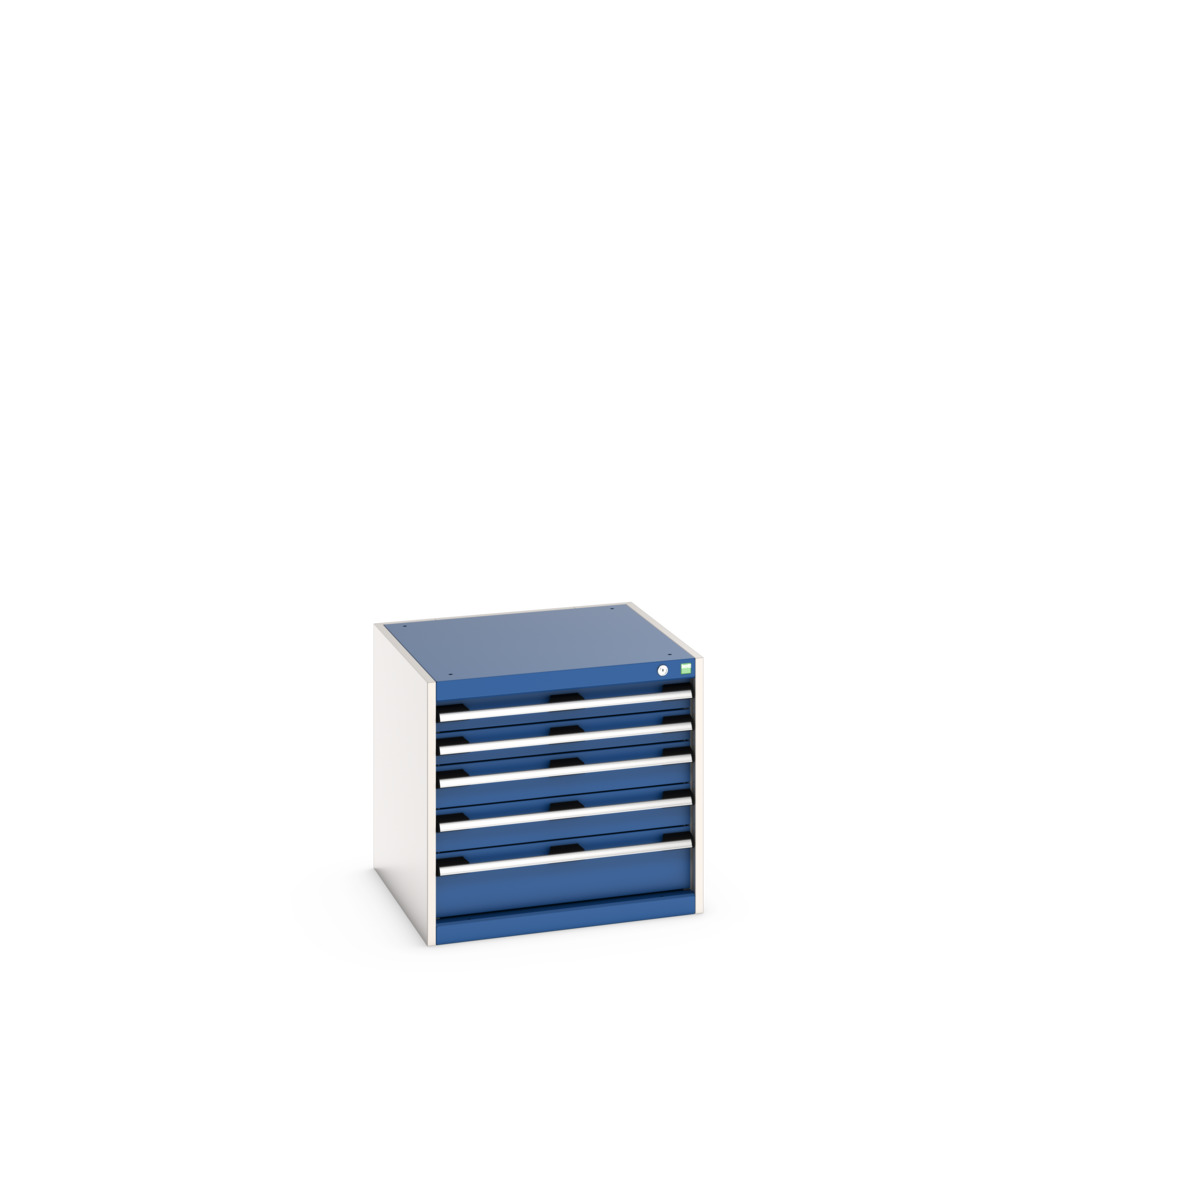 40019152.11V - cubio drawer cabinet